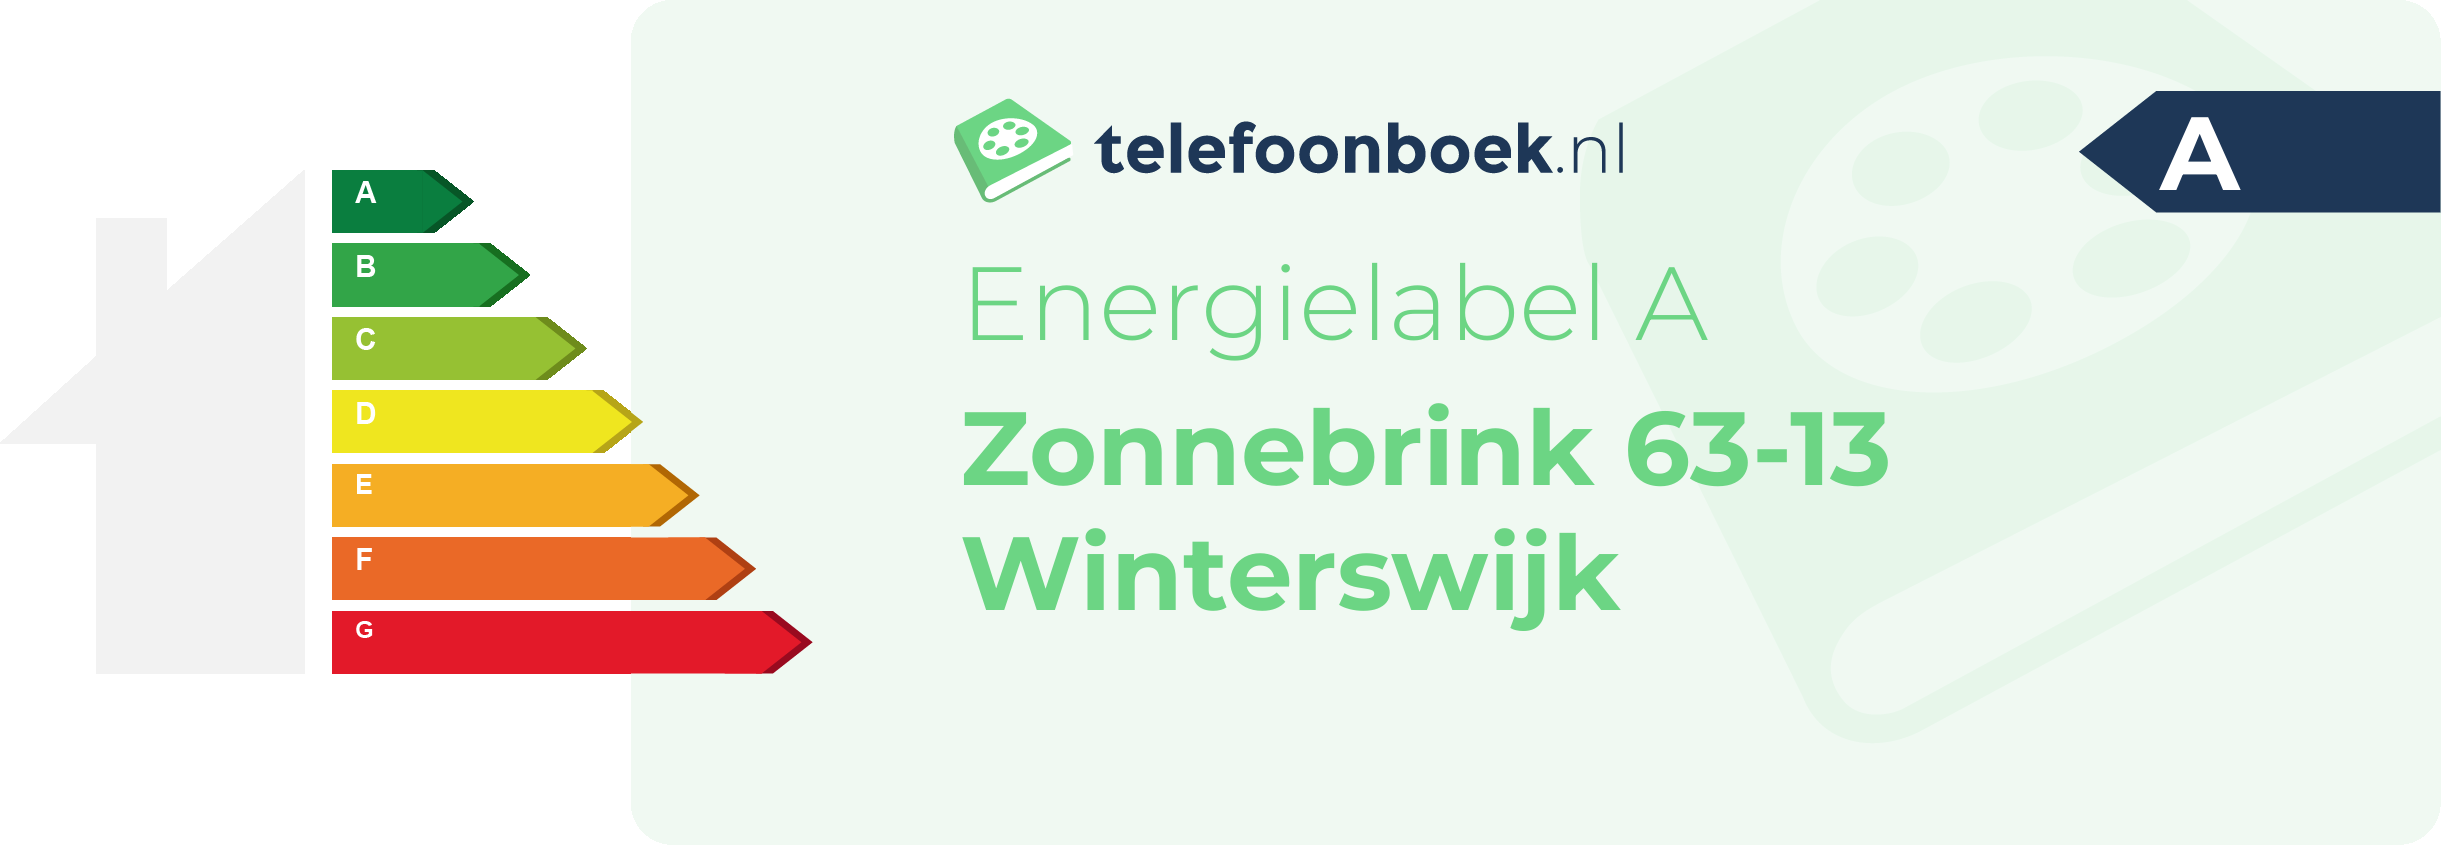 Energielabel Zonnebrink 63-13 Winterswijk